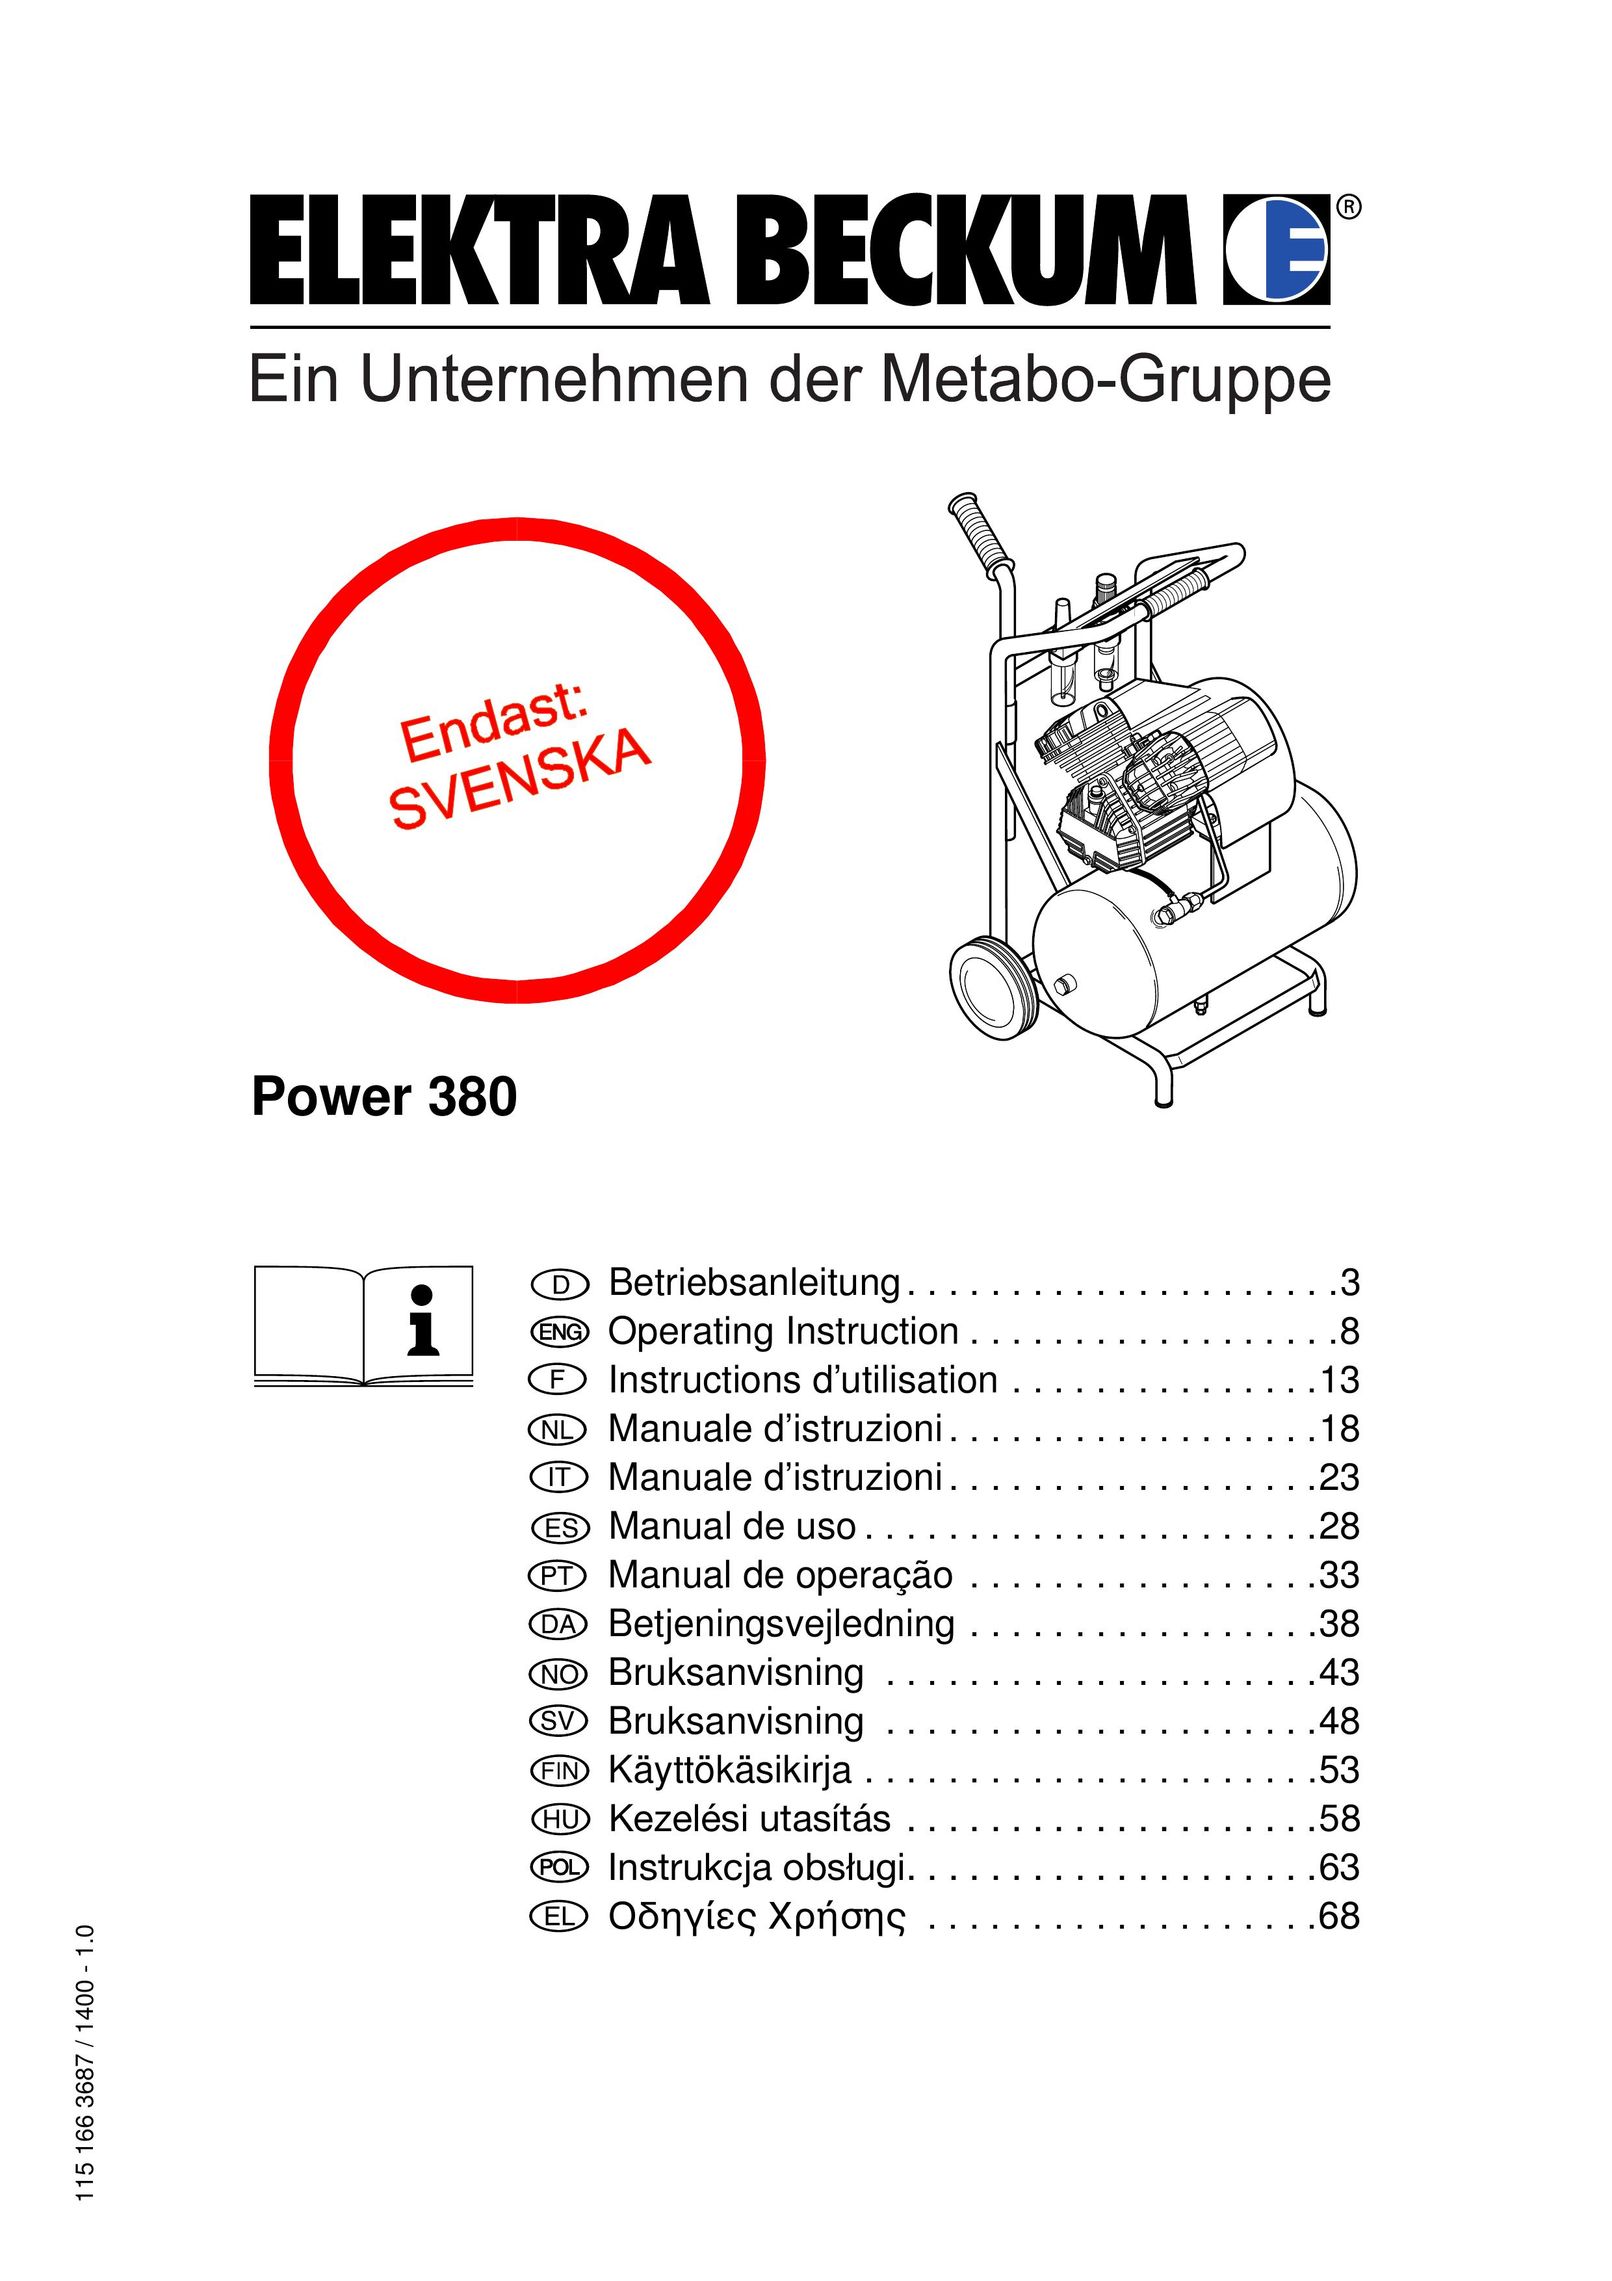 Elektra Beckum Power 380 Air Compressor User Manual